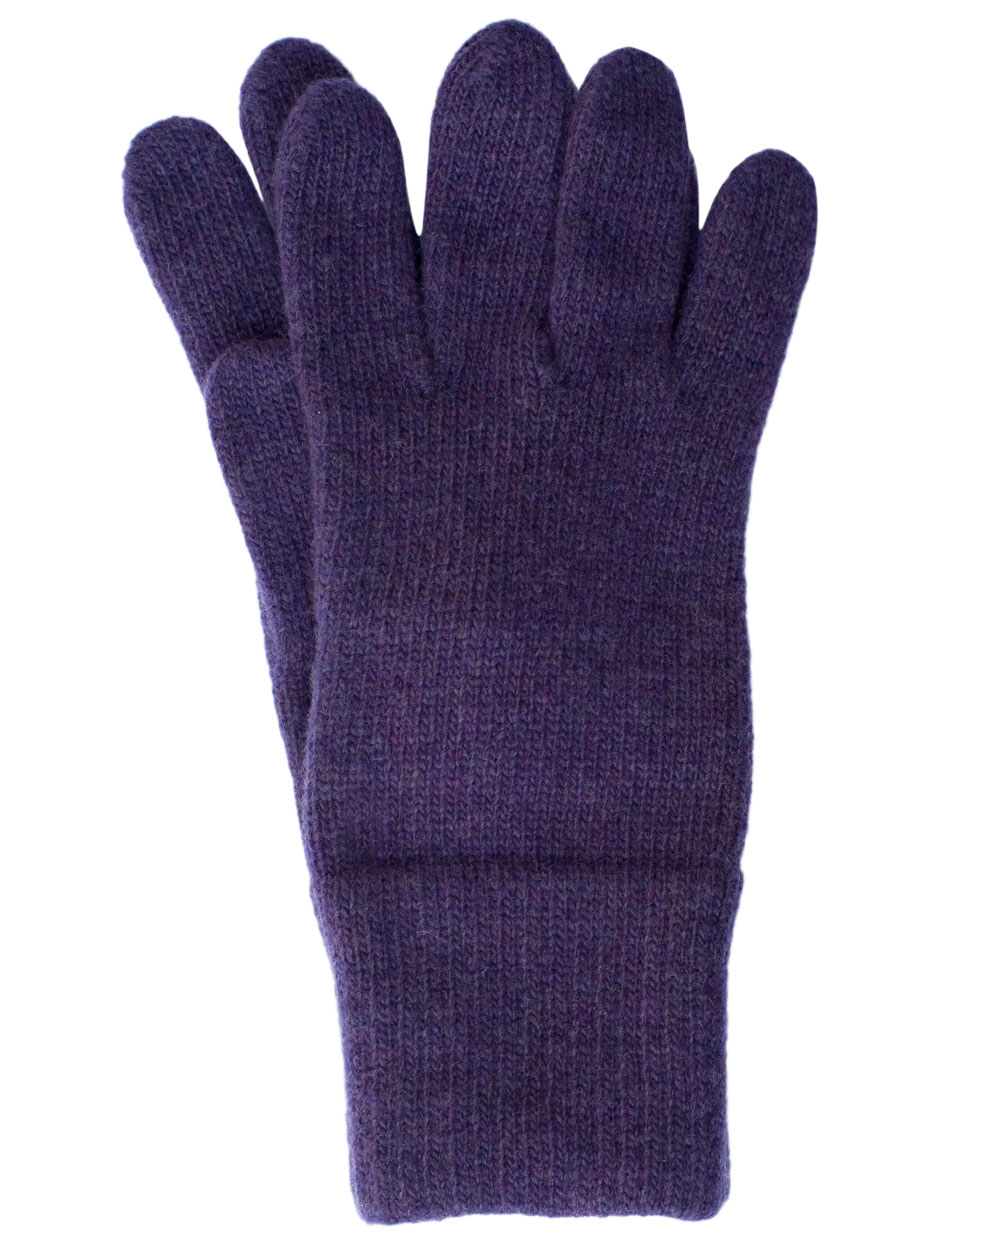 Handschuhe--Damen-Fingerhandschuhe-schmaler Schnitt-Wolle-Winter-Damenhandschuhe